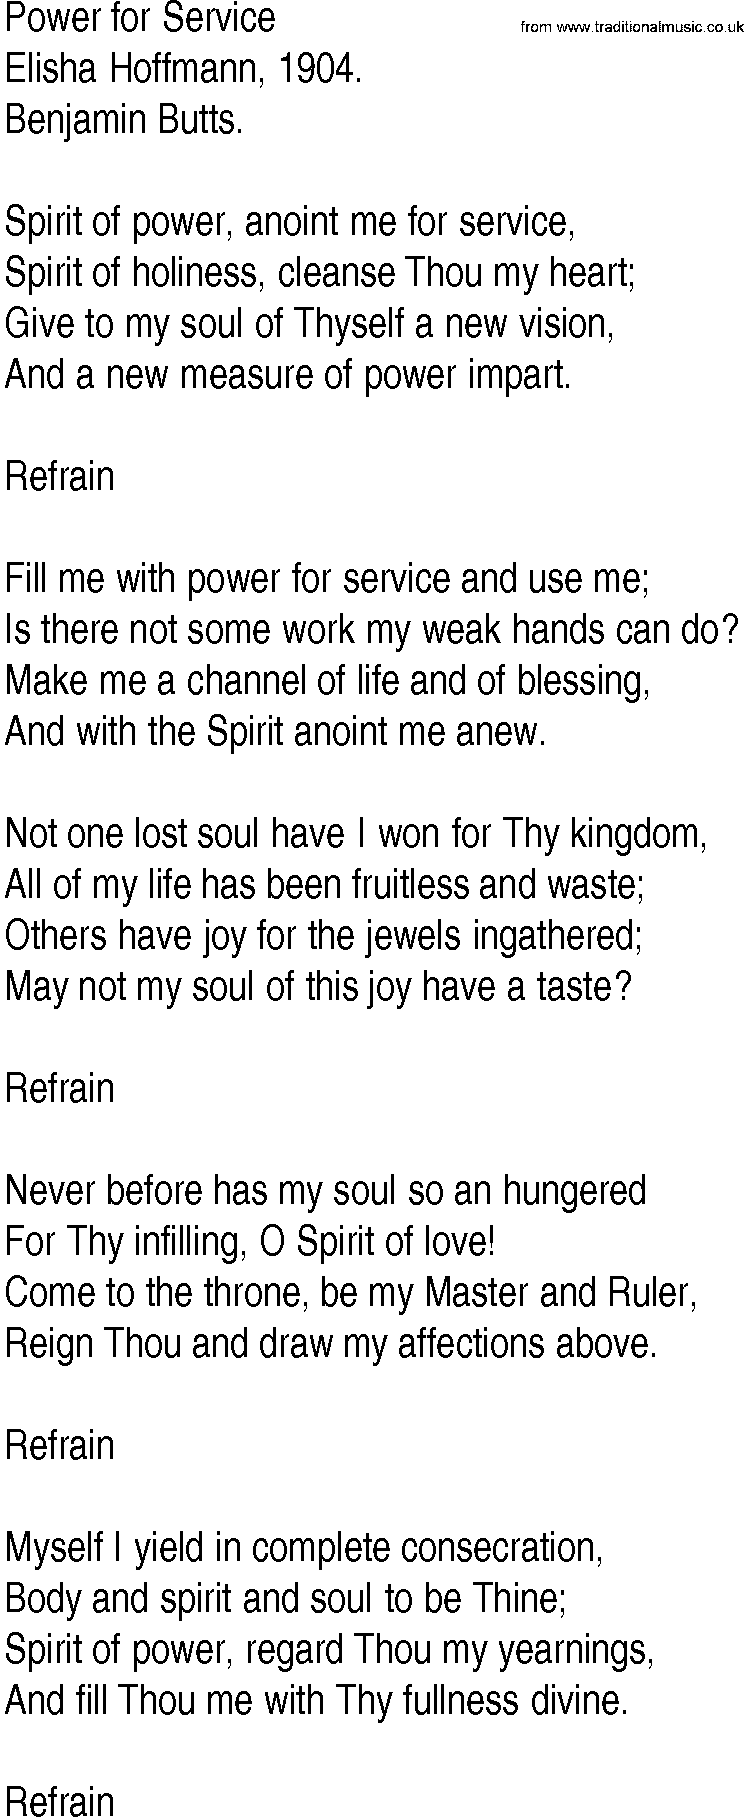 Hymn and Gospel Song: Power for Service by Elisha Hoffmann lyrics